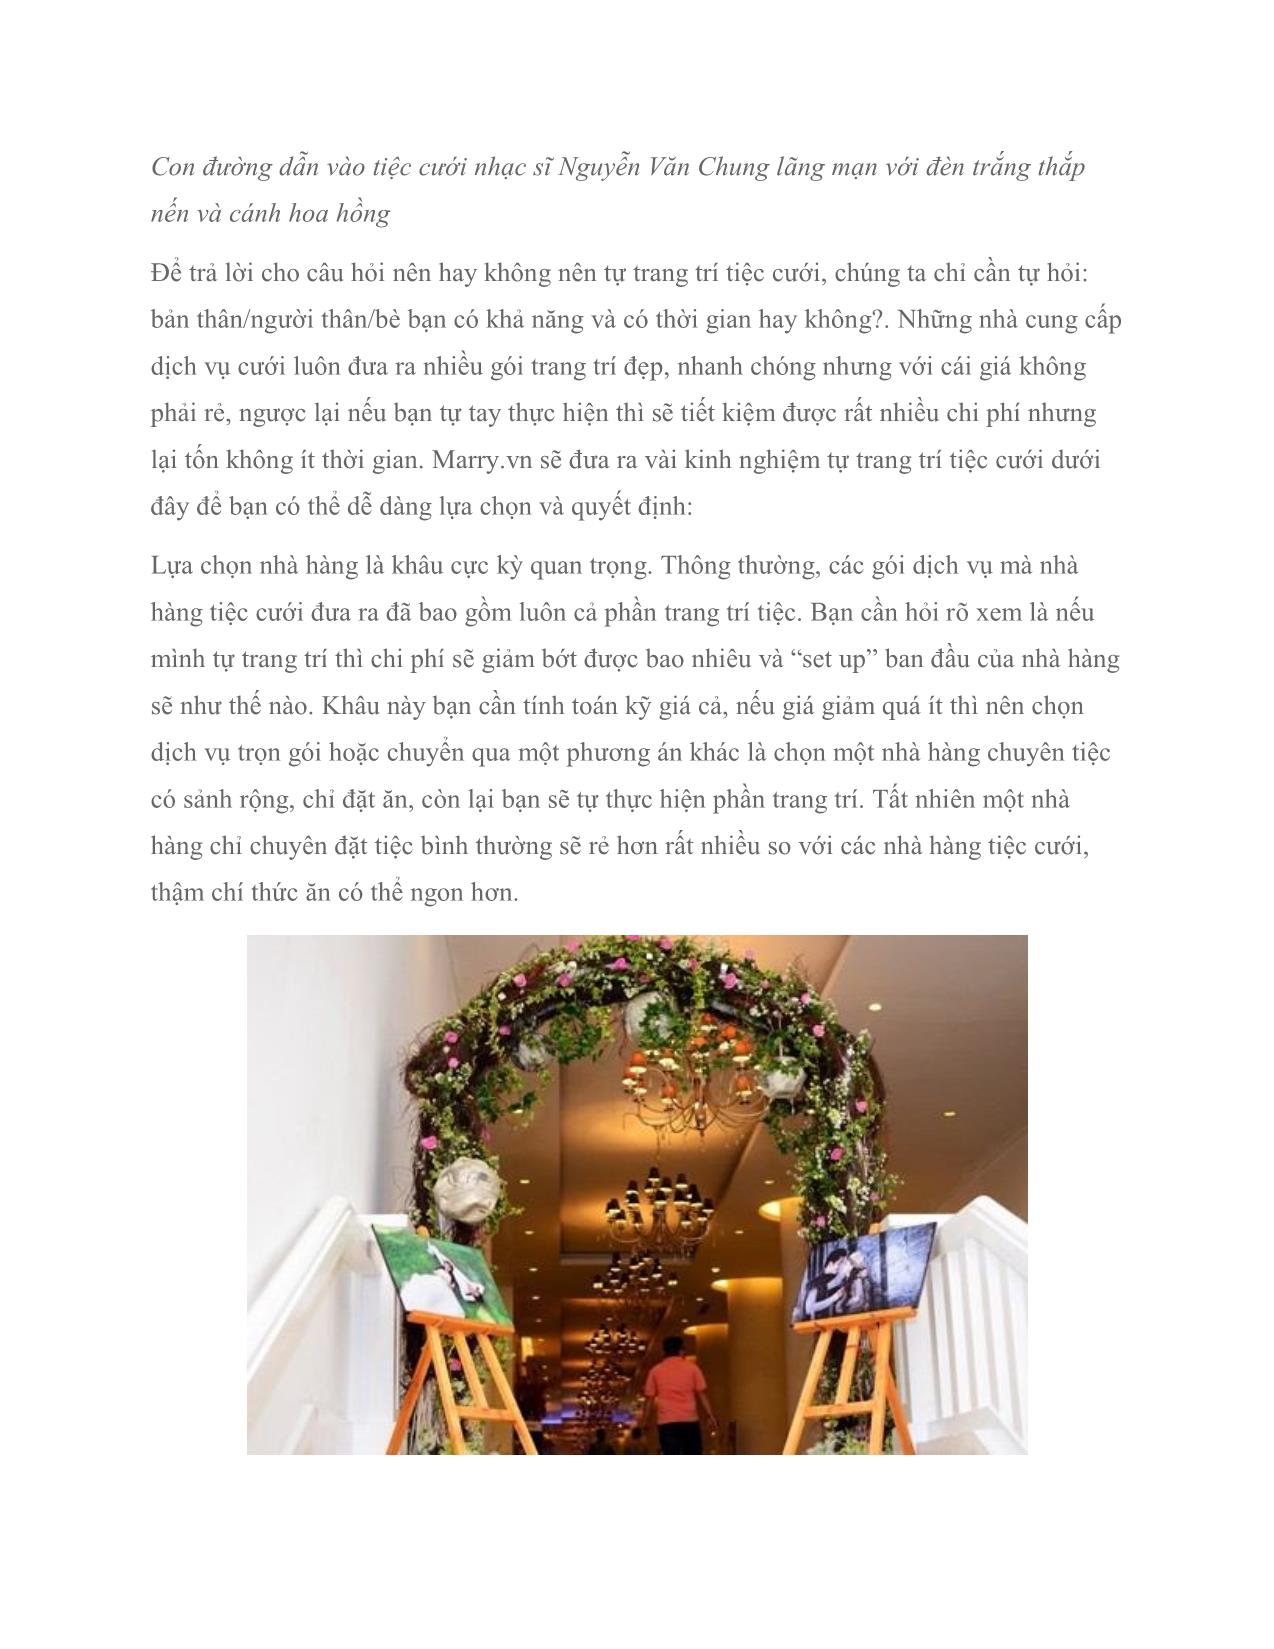 Tự trang trí tiệc cưới tại nhà hàng: Nên hay không nên trang 2